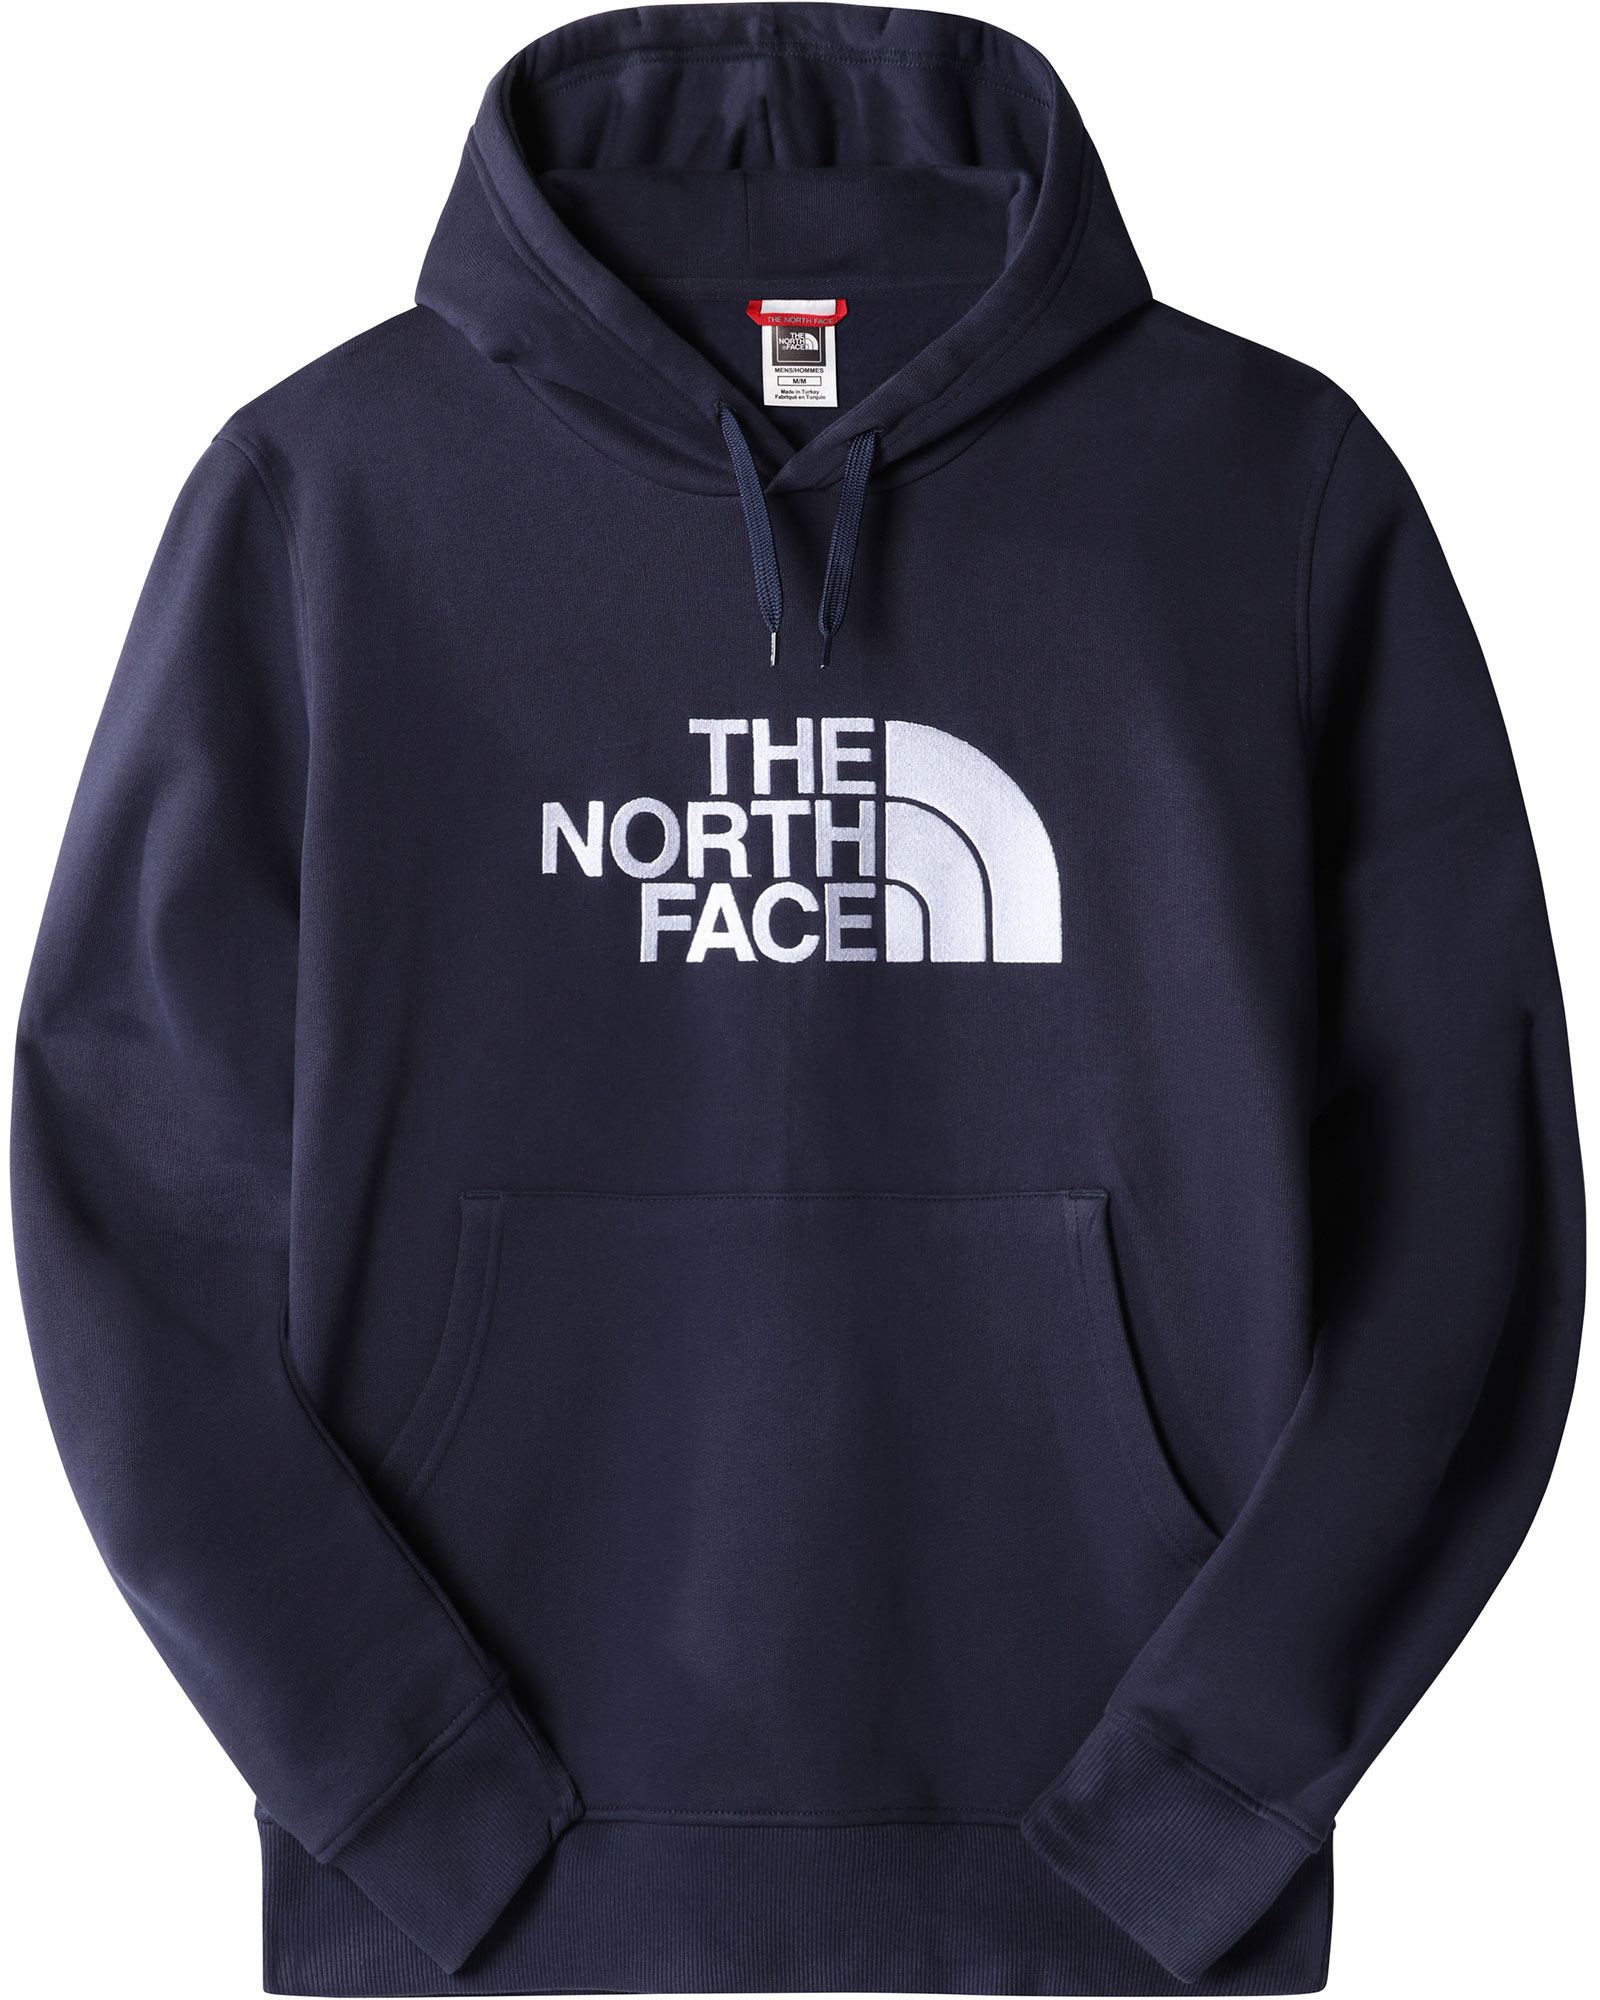 The North Face Drew Peak Men’s Hoodie - Summit Navy S